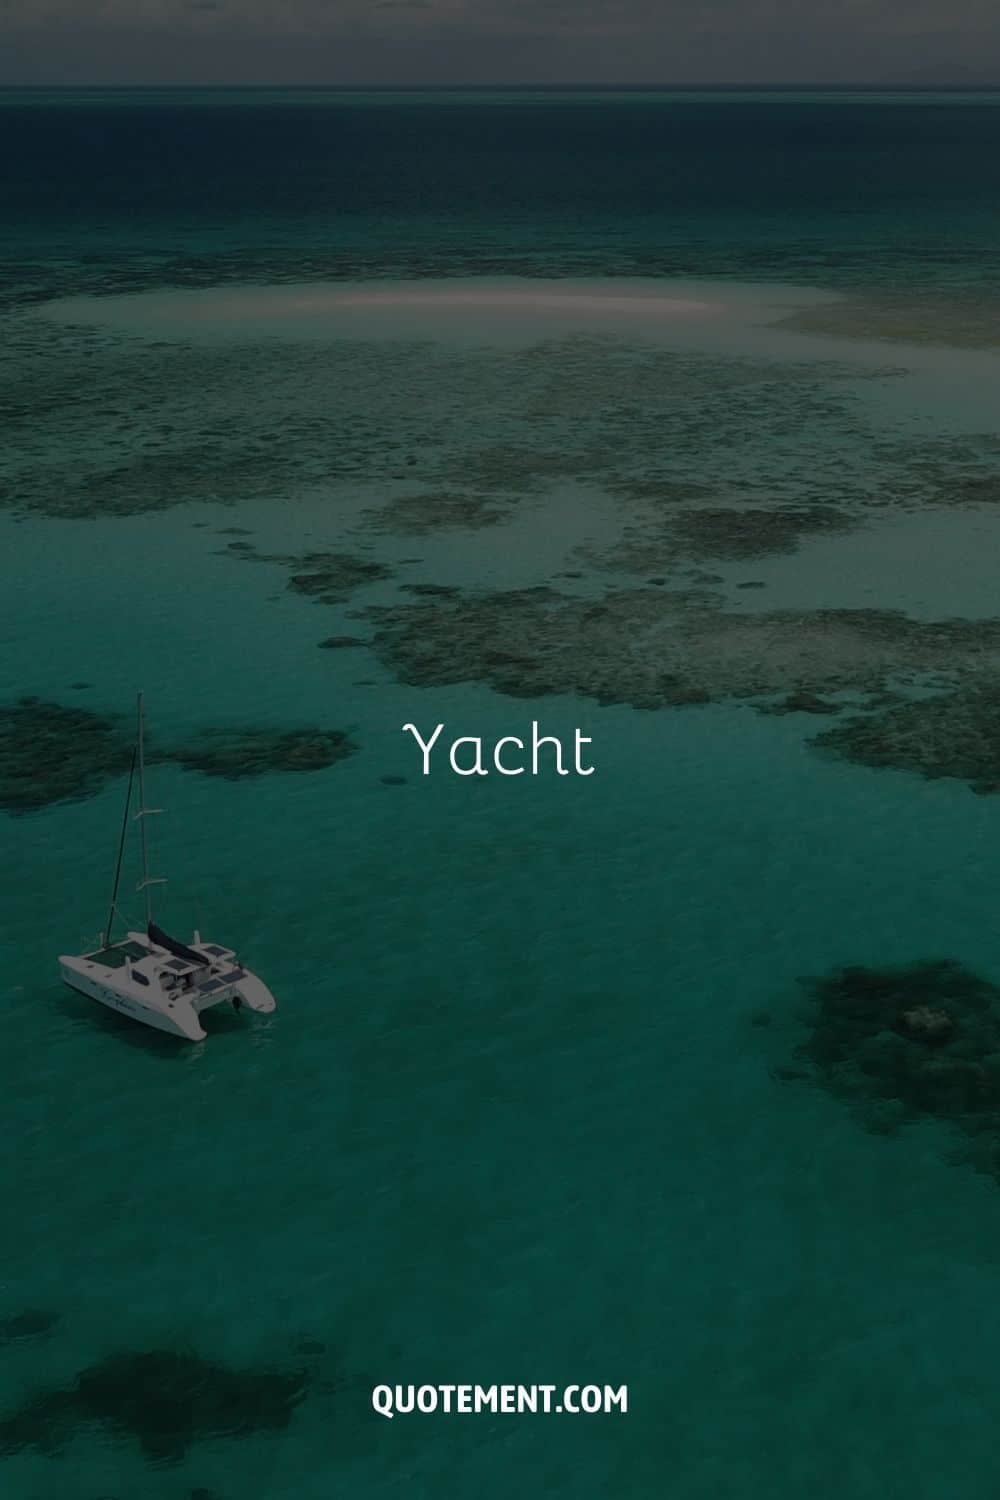 a yacht on a blue ocean